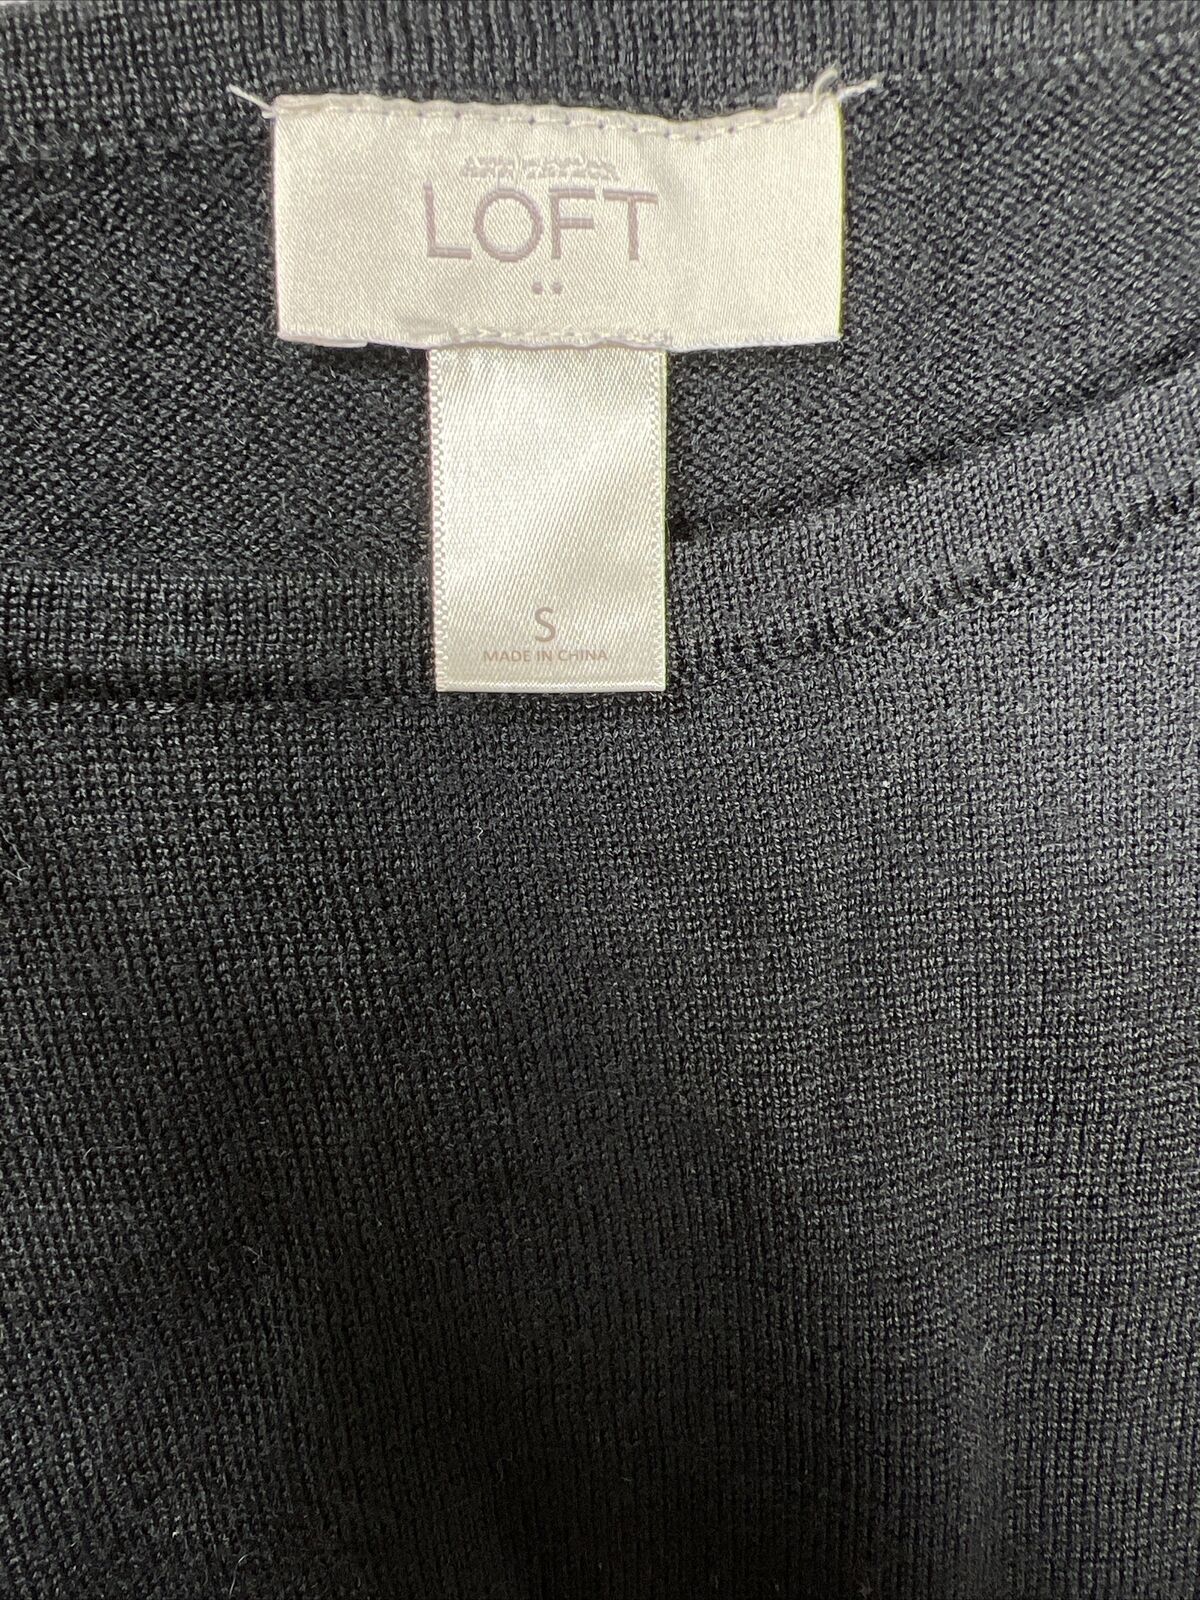 LOFT Vestido tipo suéter hasta la rodilla con manga 3/4, color negro y morado, para mujer - S